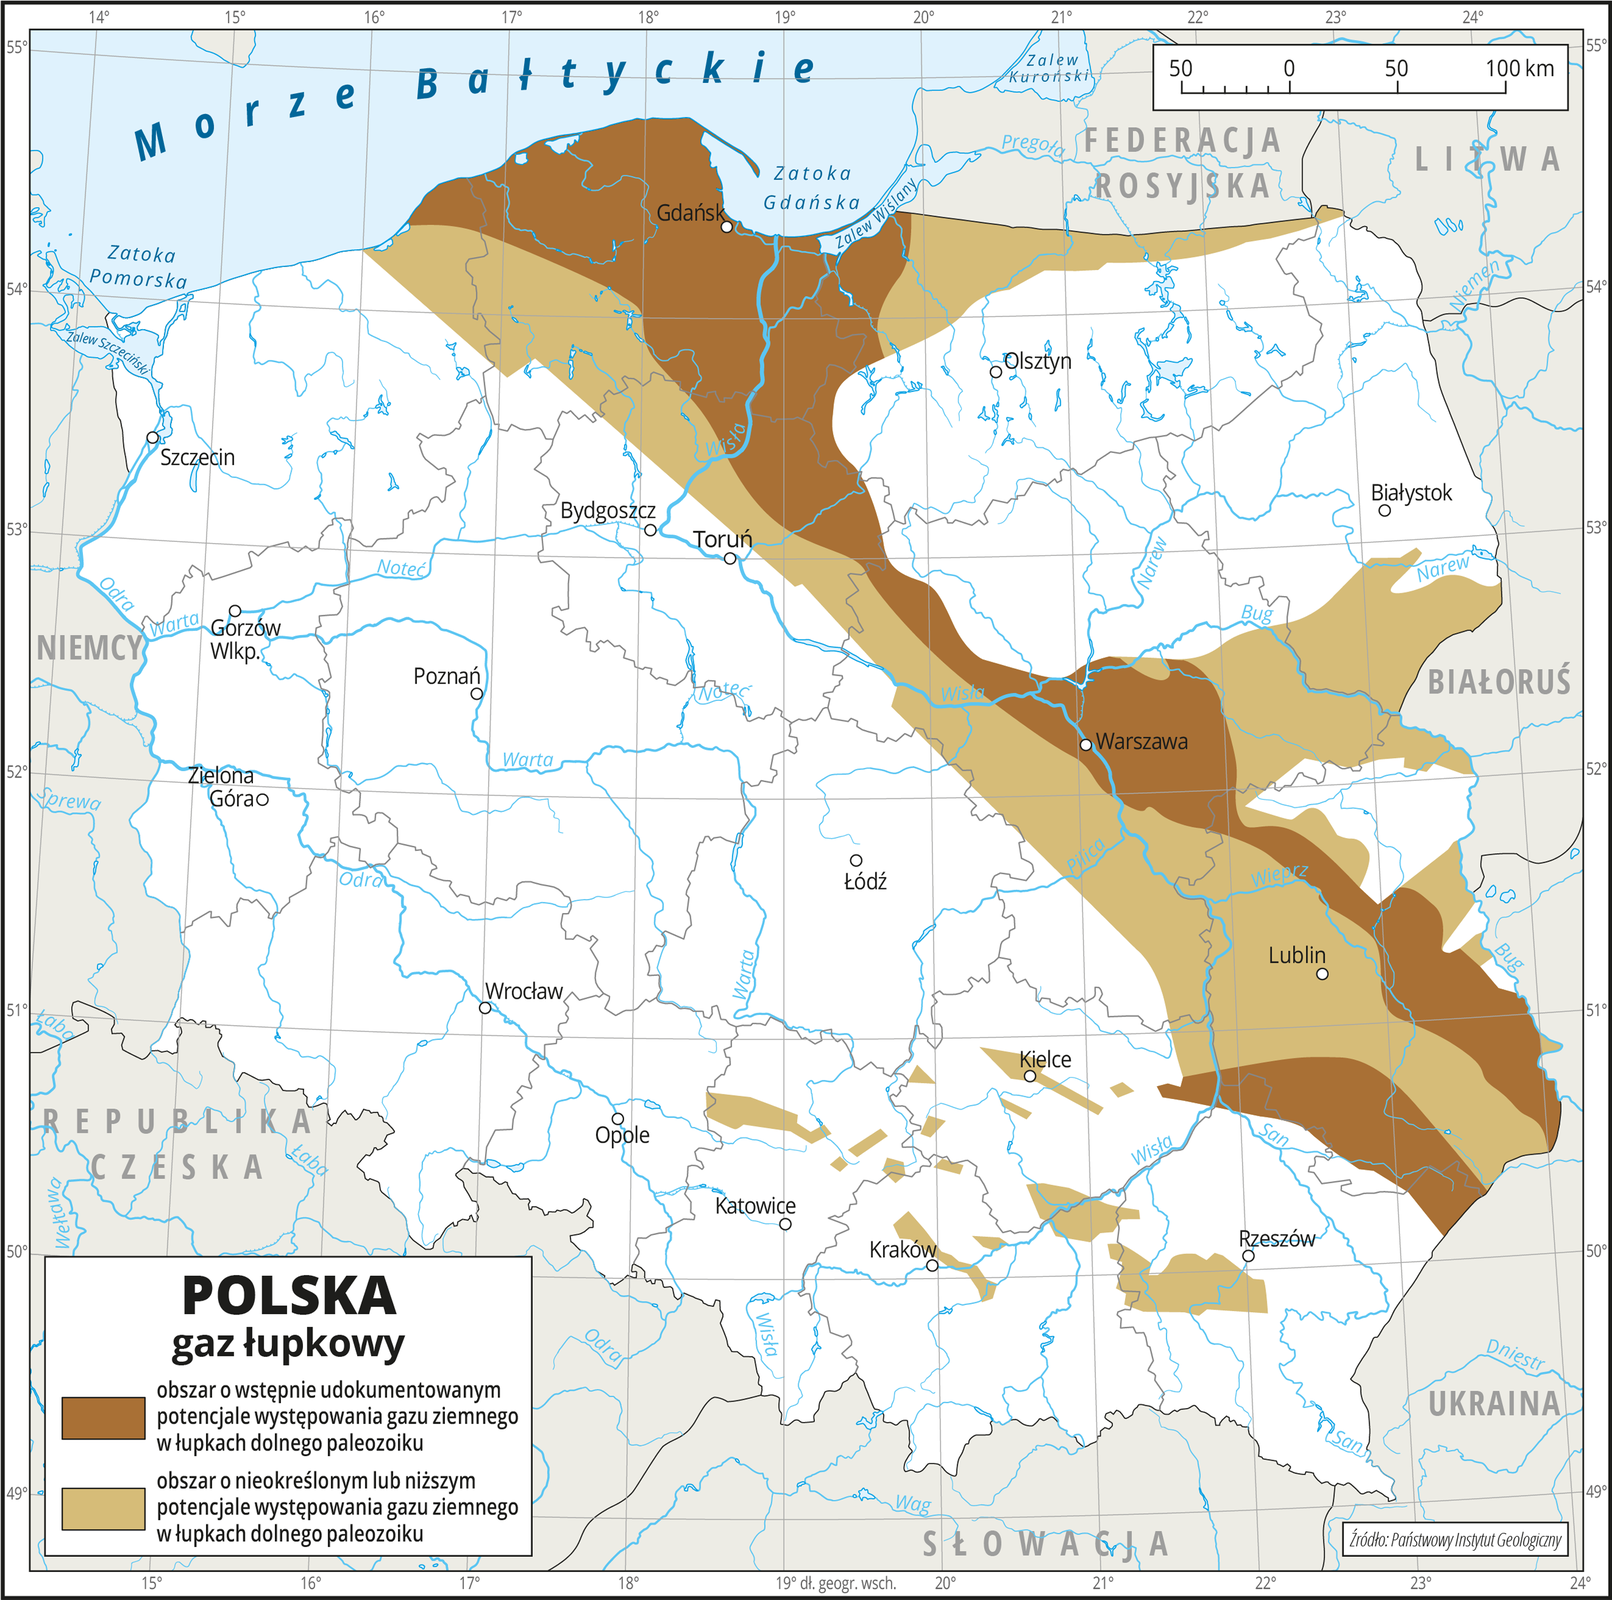 Ilustracja przedstawia mapę Polski. Na mapie przedstawiono występowanie gazu łupkowego. Kolorem ciemnobrązowym przedstawiono obszar o wstępnie udokumentowanym potencjale występowania gazu ziemnego, a obszarem jasnobrązowym – obszar o nieokreślonym lub niższym potencjale występowania gazu ziemnego. Oba obszary występowania gazu łupkowego biegną z północy na południowy wschód i obejmują województwo pomorskie, północną część województwa warmińsko-mazurskiego, północno-zachodnią część województwa kujawsko-pomorskiego, centralną część województwa mazowieckiego i województwo lubelskie przy czym kolor ciemnobrązowy ma znacznie węższy zasięg niż kolor jasnobrązowy. Na mapie przedstawiono granice województw, przedstawiono i opisano hydrografię oraz miasta wojewódzkie. Dookoła mapy w białej ramce opisano współrzędne geograficzne co jeden stopień. Na dole mapy w legendzie opisano kolory użyte na mapie.